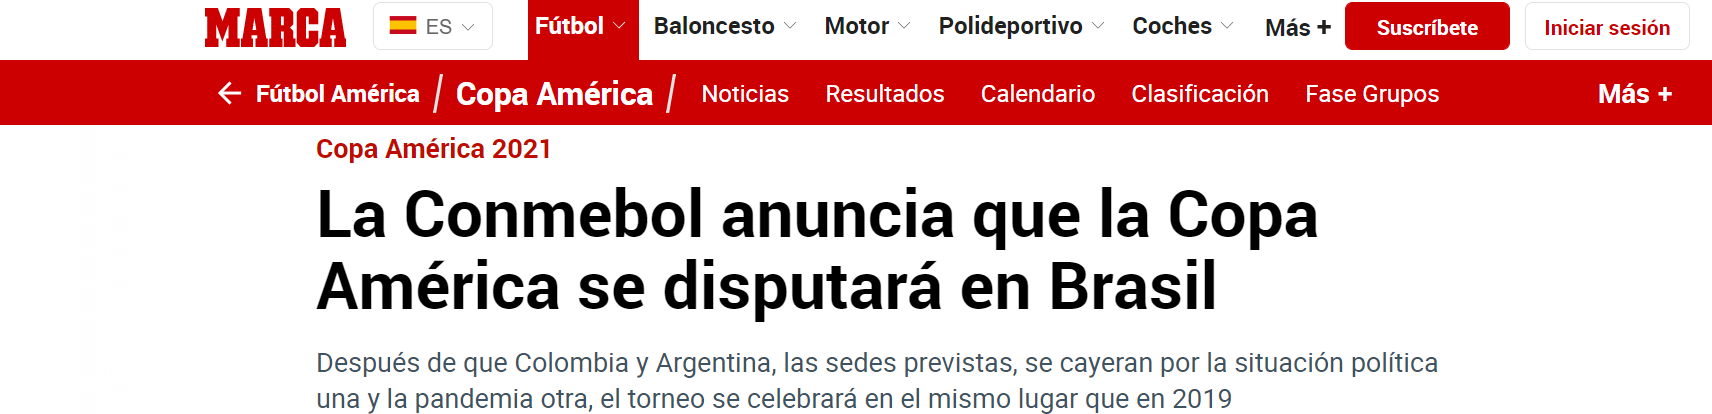 Após o anúncio da desistência da Argentina, o 'Marca', da Espanha, noticiou o Brasil como nova sede. O jornal também questiona: 'Por que a Copa está indo para o Brasil? Estádios prontos, governo pronto e uma pandemia em declínio?'